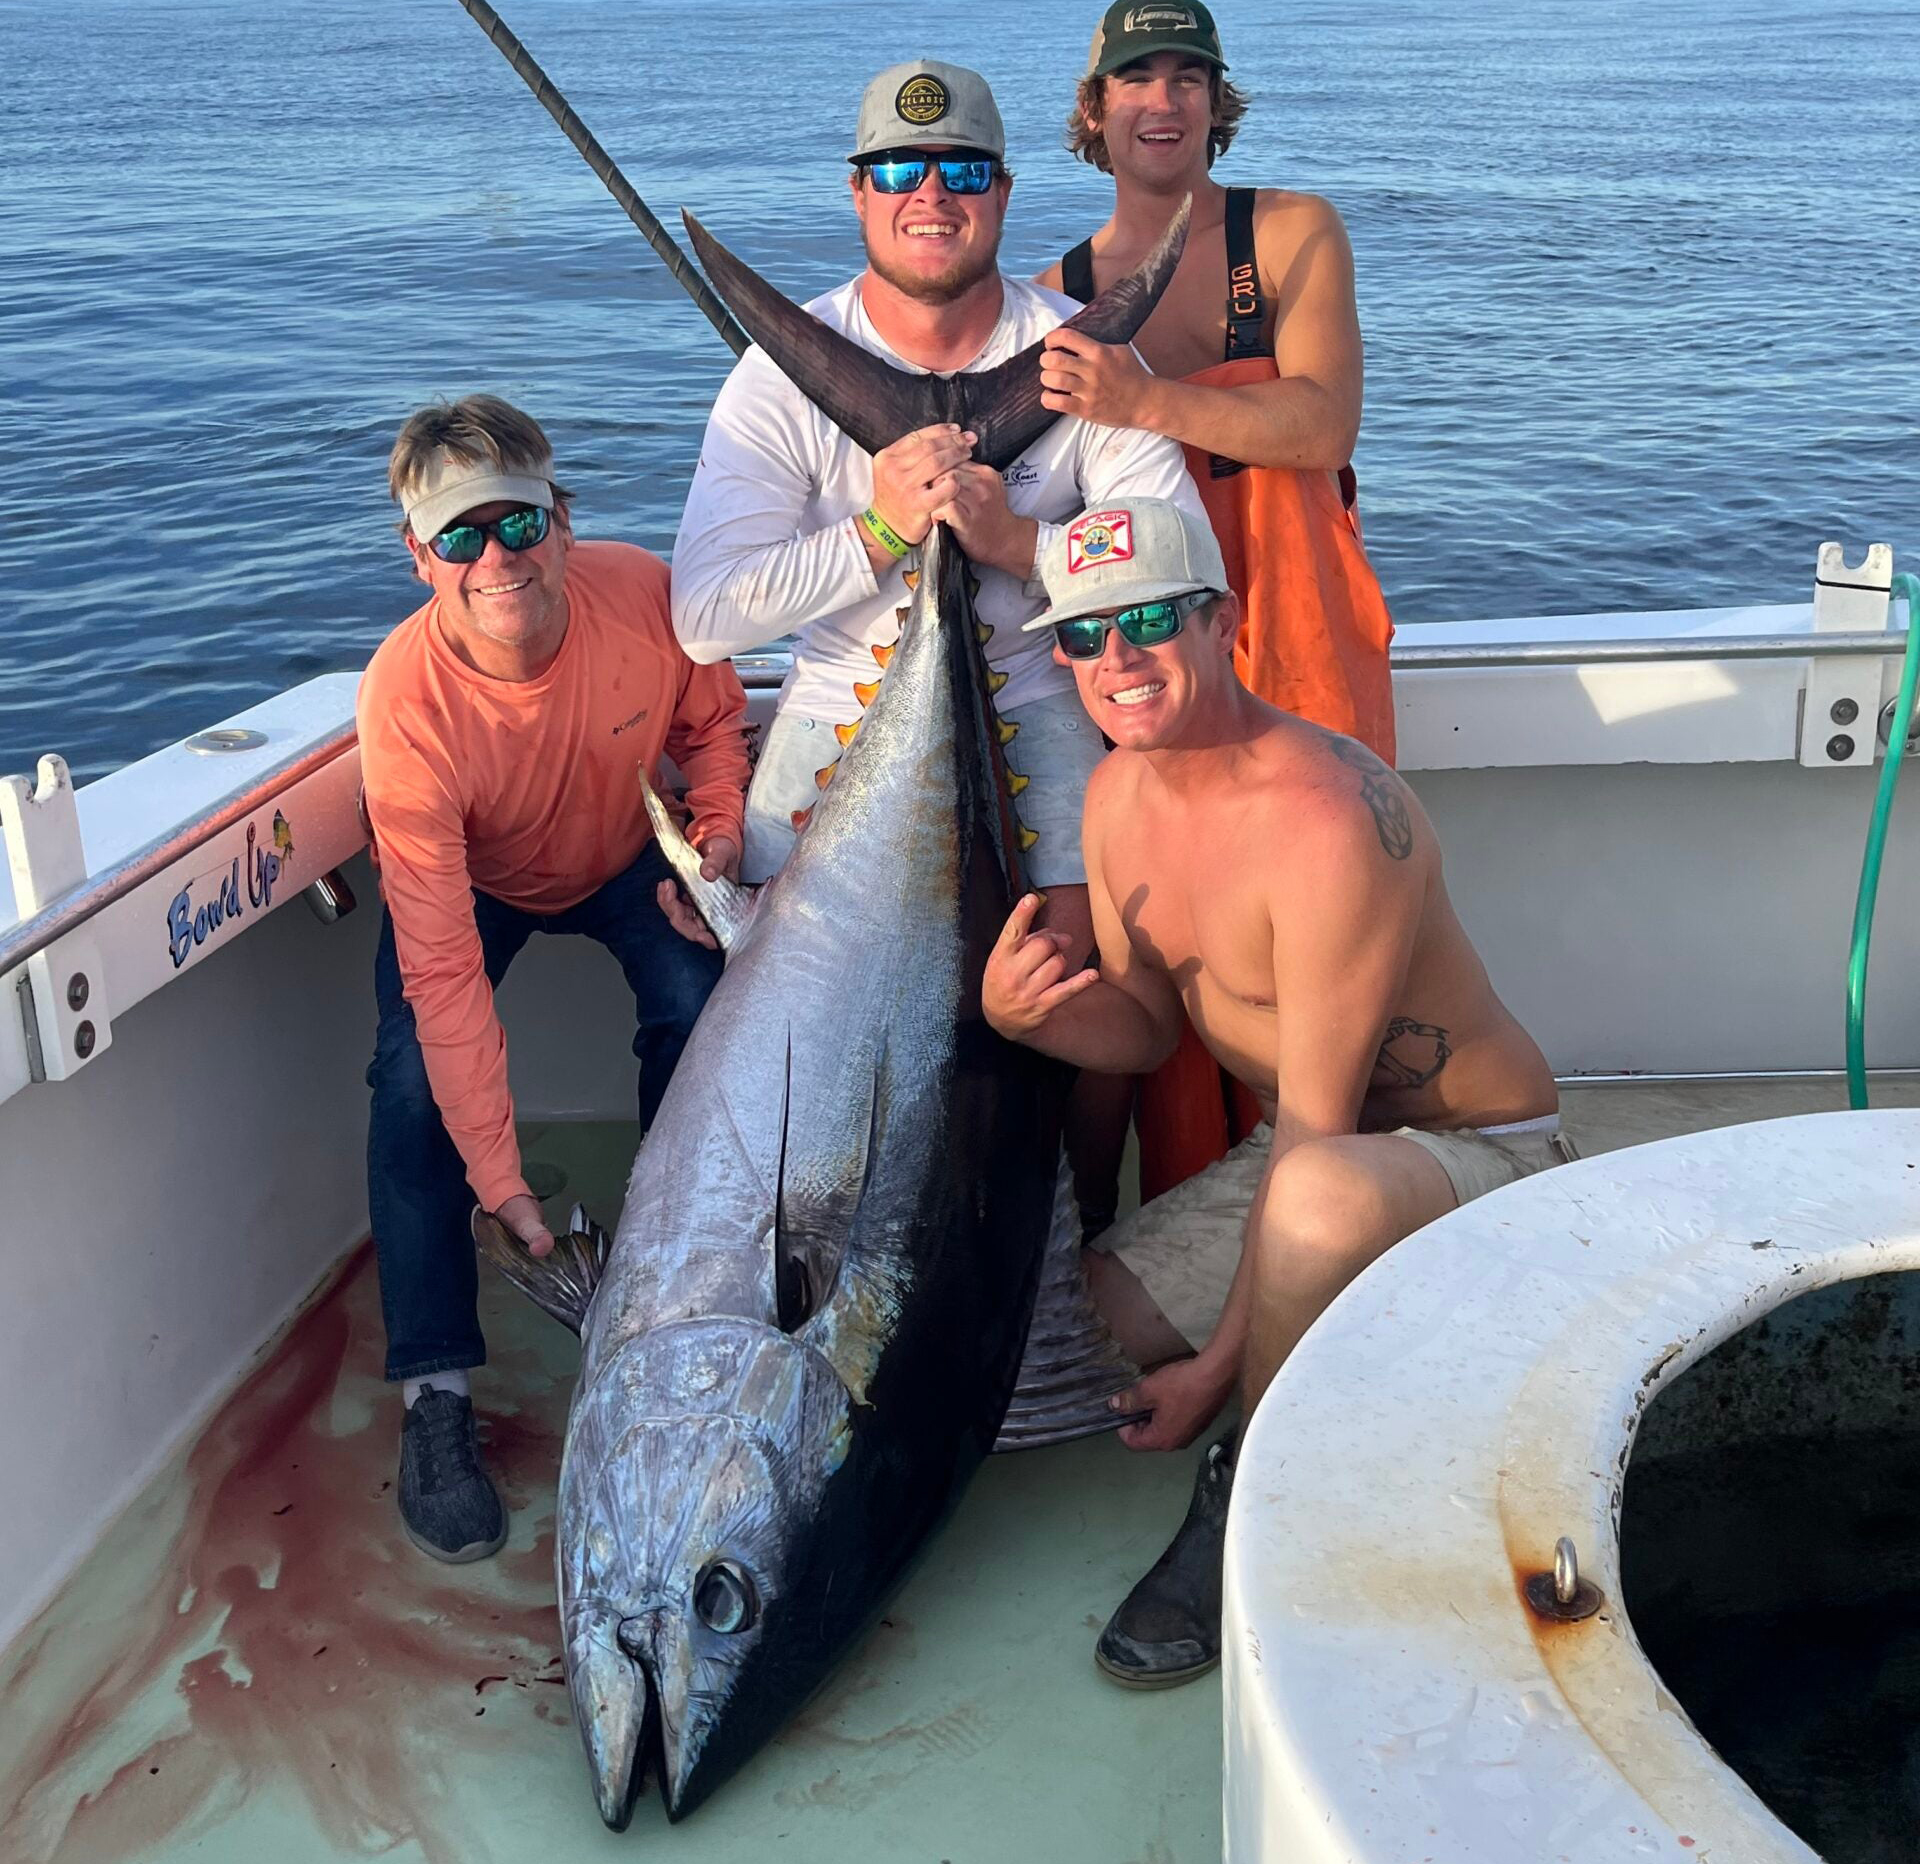 Big game anglers eye massive influx of bluefin tuna